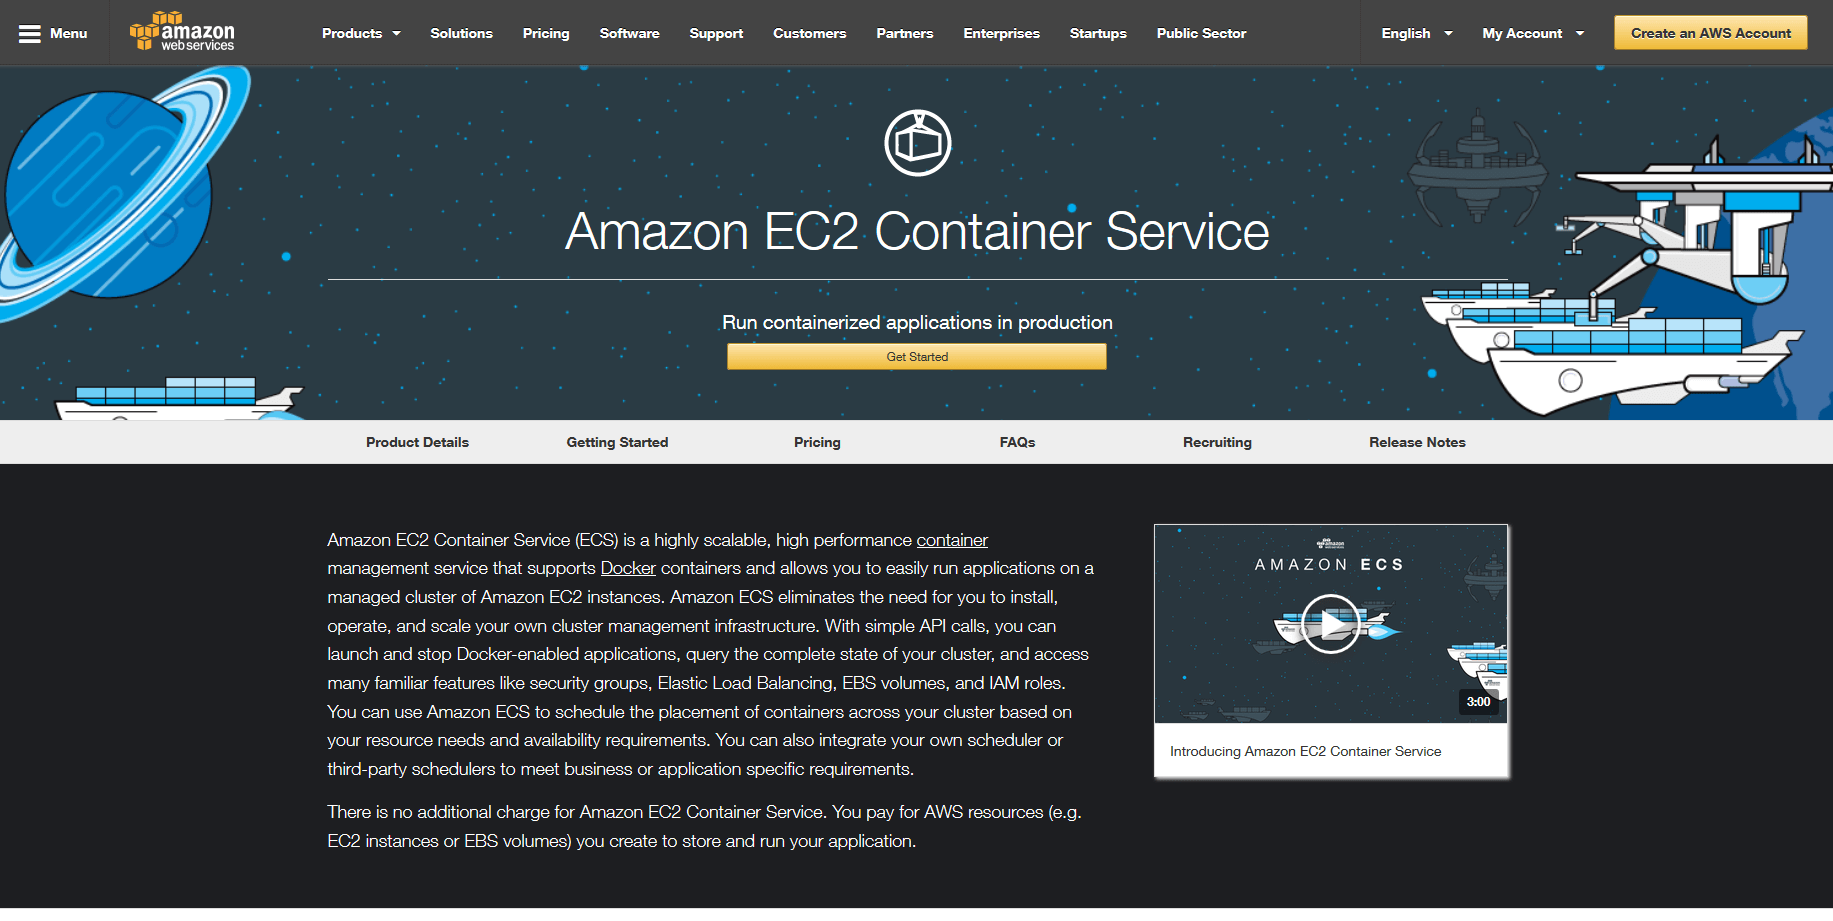 Pagina del prodotto Amazon EC2 Container Service (ECS) sul sito di Amazon